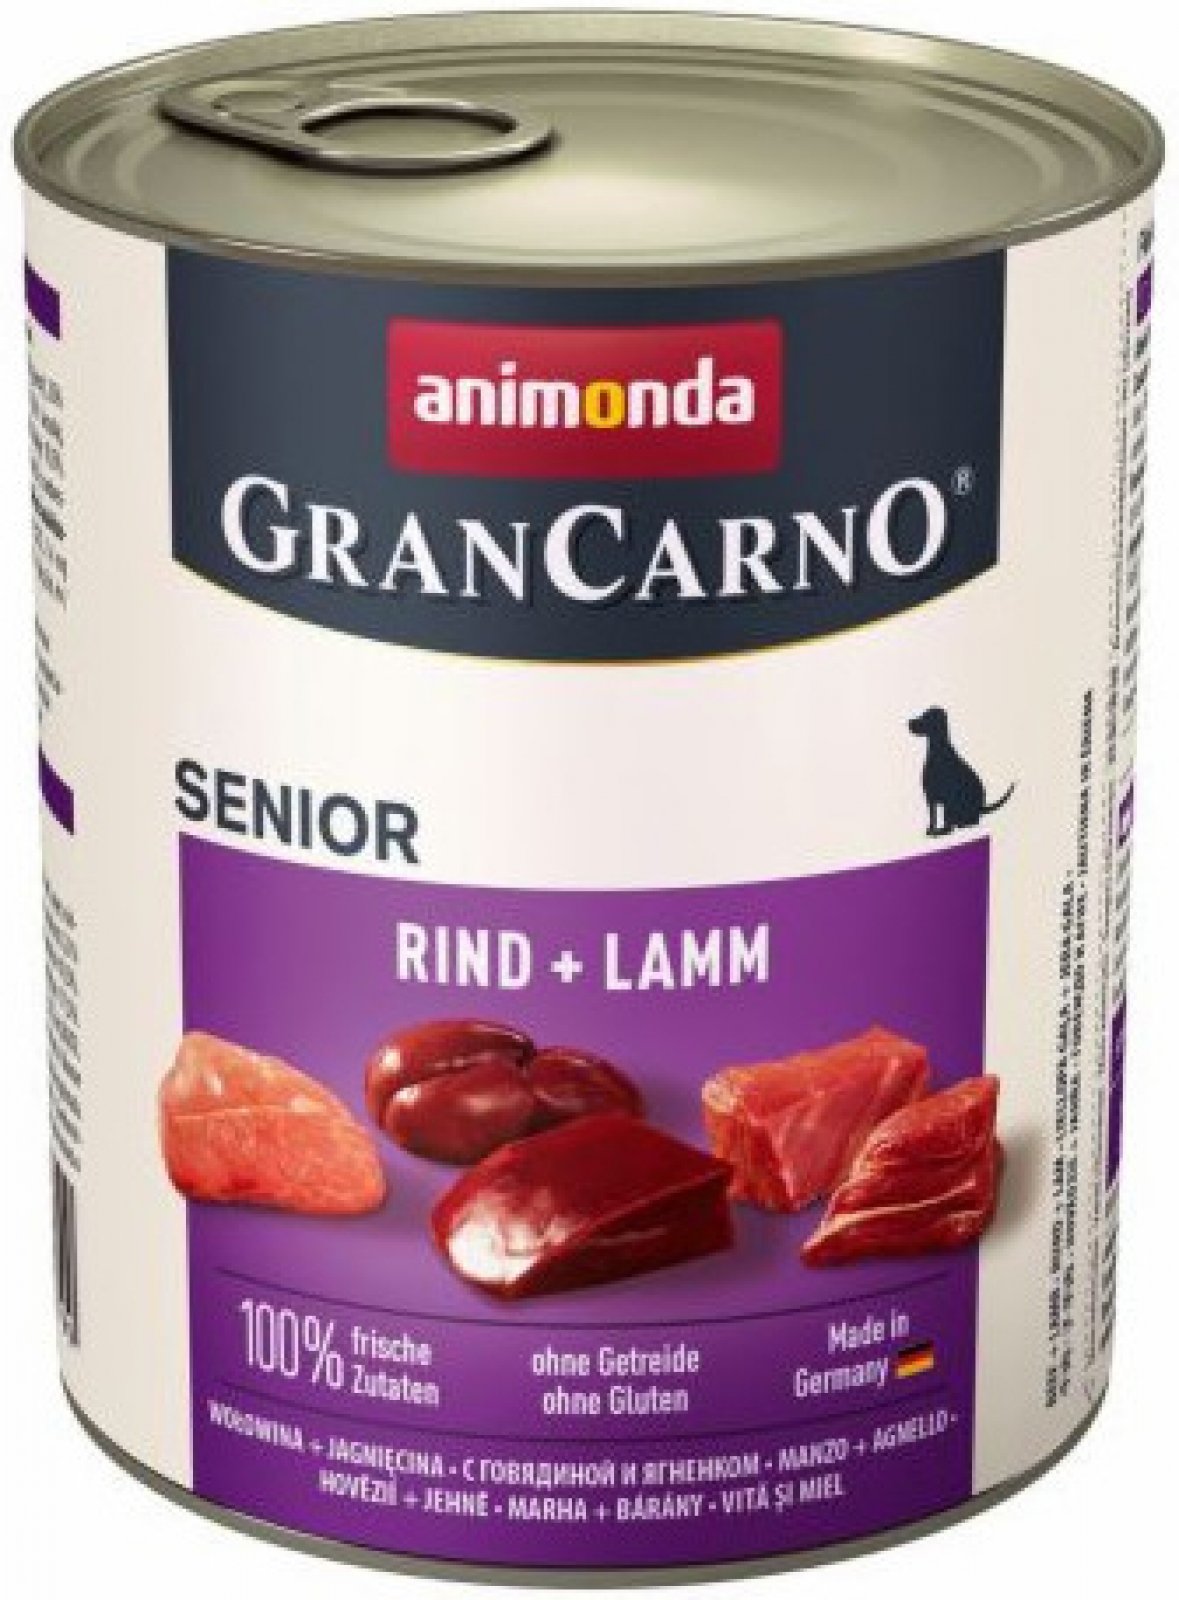 Animonda Gran Carno Senior Beef & Lamb 800g